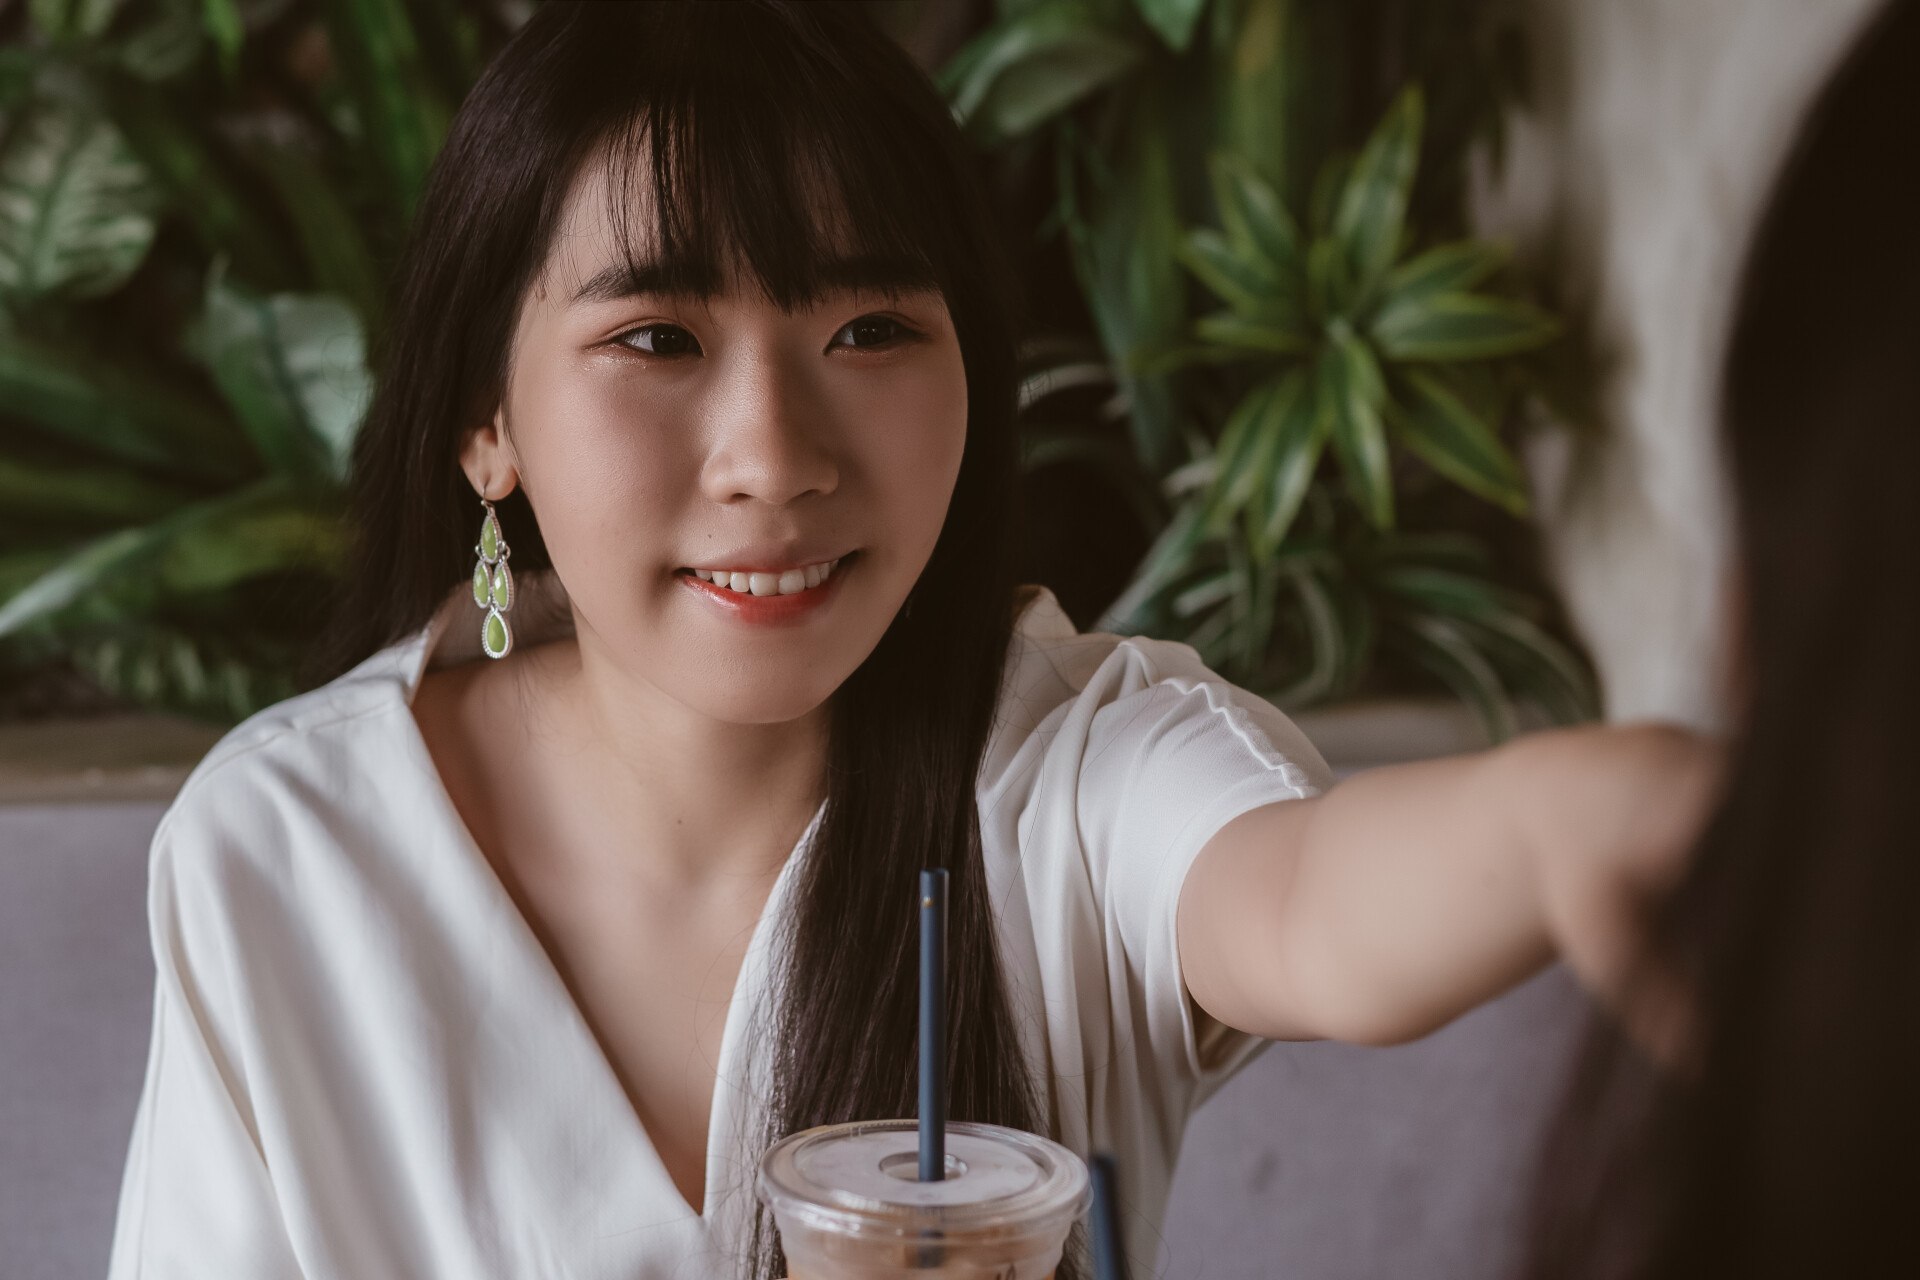 Meet and Dating Asian Women Online